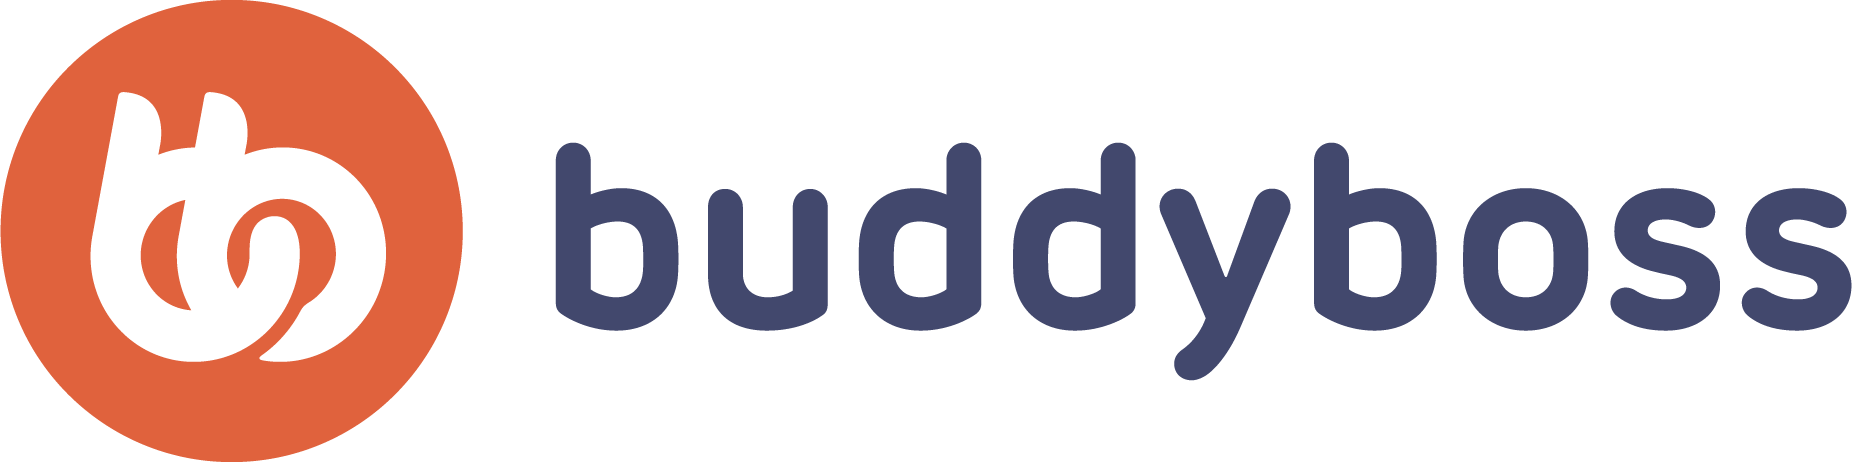 Buddyboss Logo Official PNG